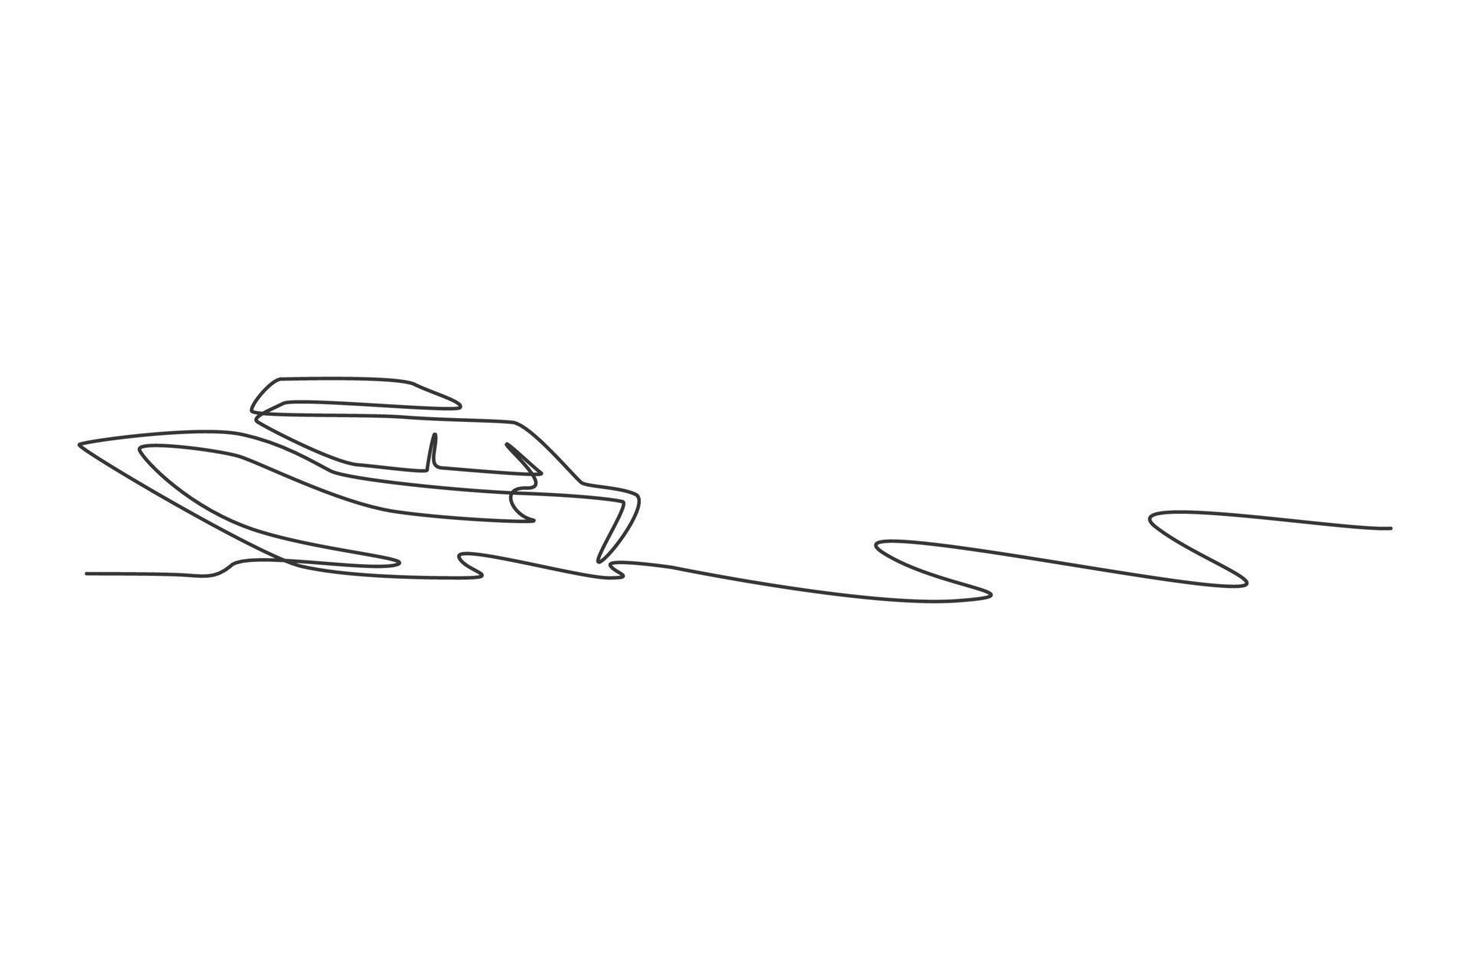 en kontinuerlig linjeteckning av snabb fartbåt som seglar på havet. vatten transport fordon koncept. dynamisk enkel linje rita design vektor illustration grafik